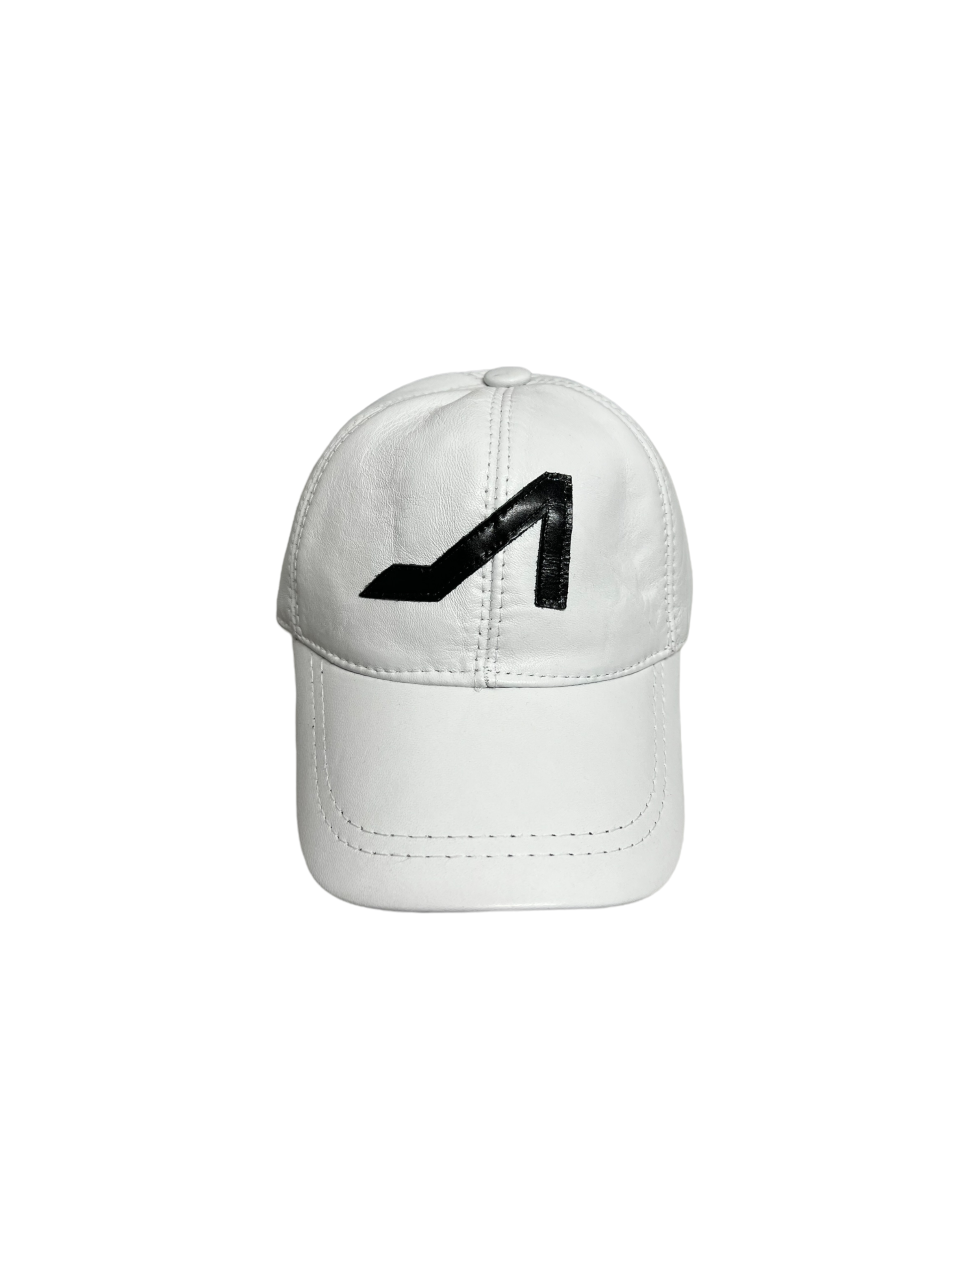 Apoli White hat black logo